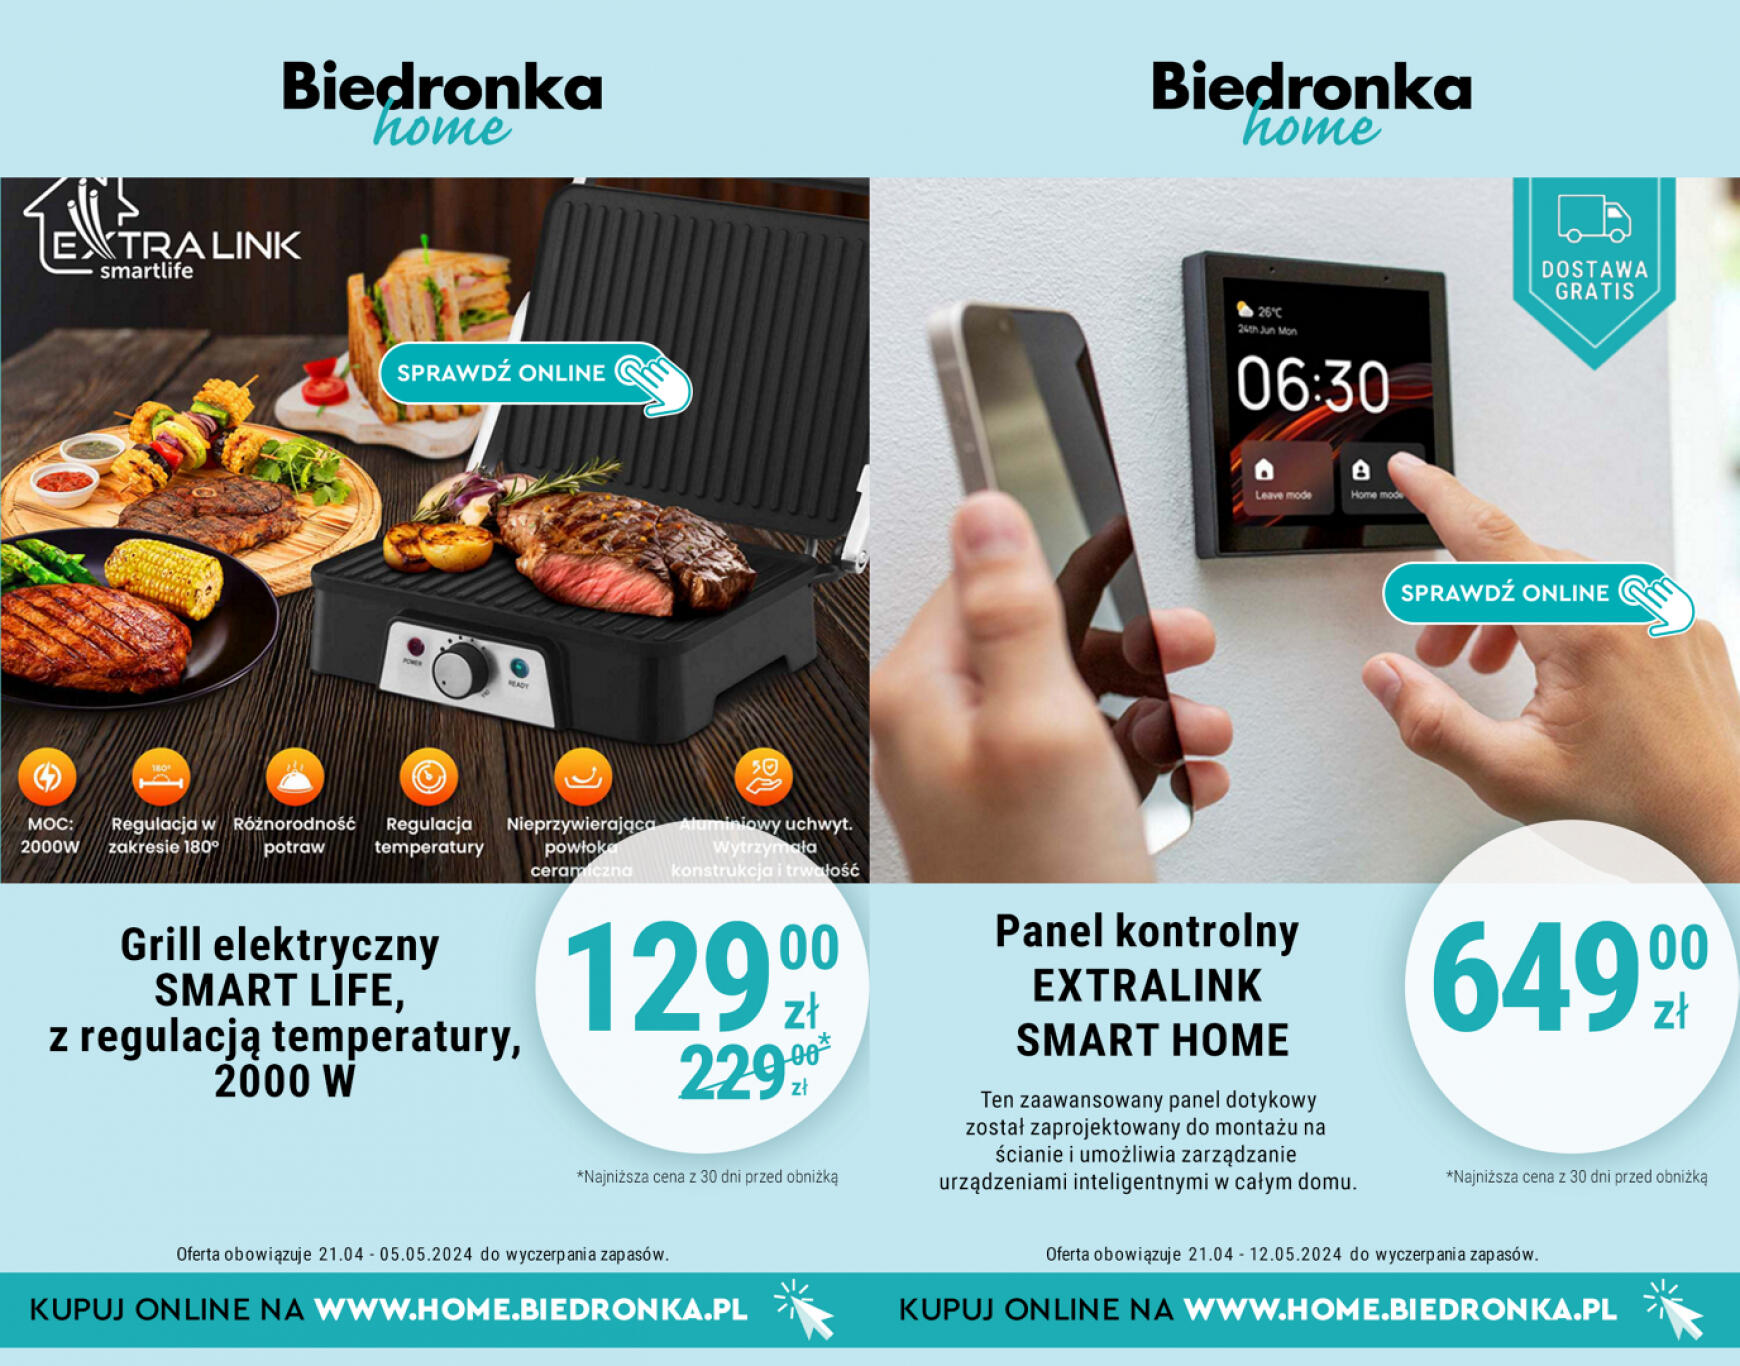 biedronka - Biedronka Home gazetka aktualna ważna od 21.04. - 05.05. - page: 2